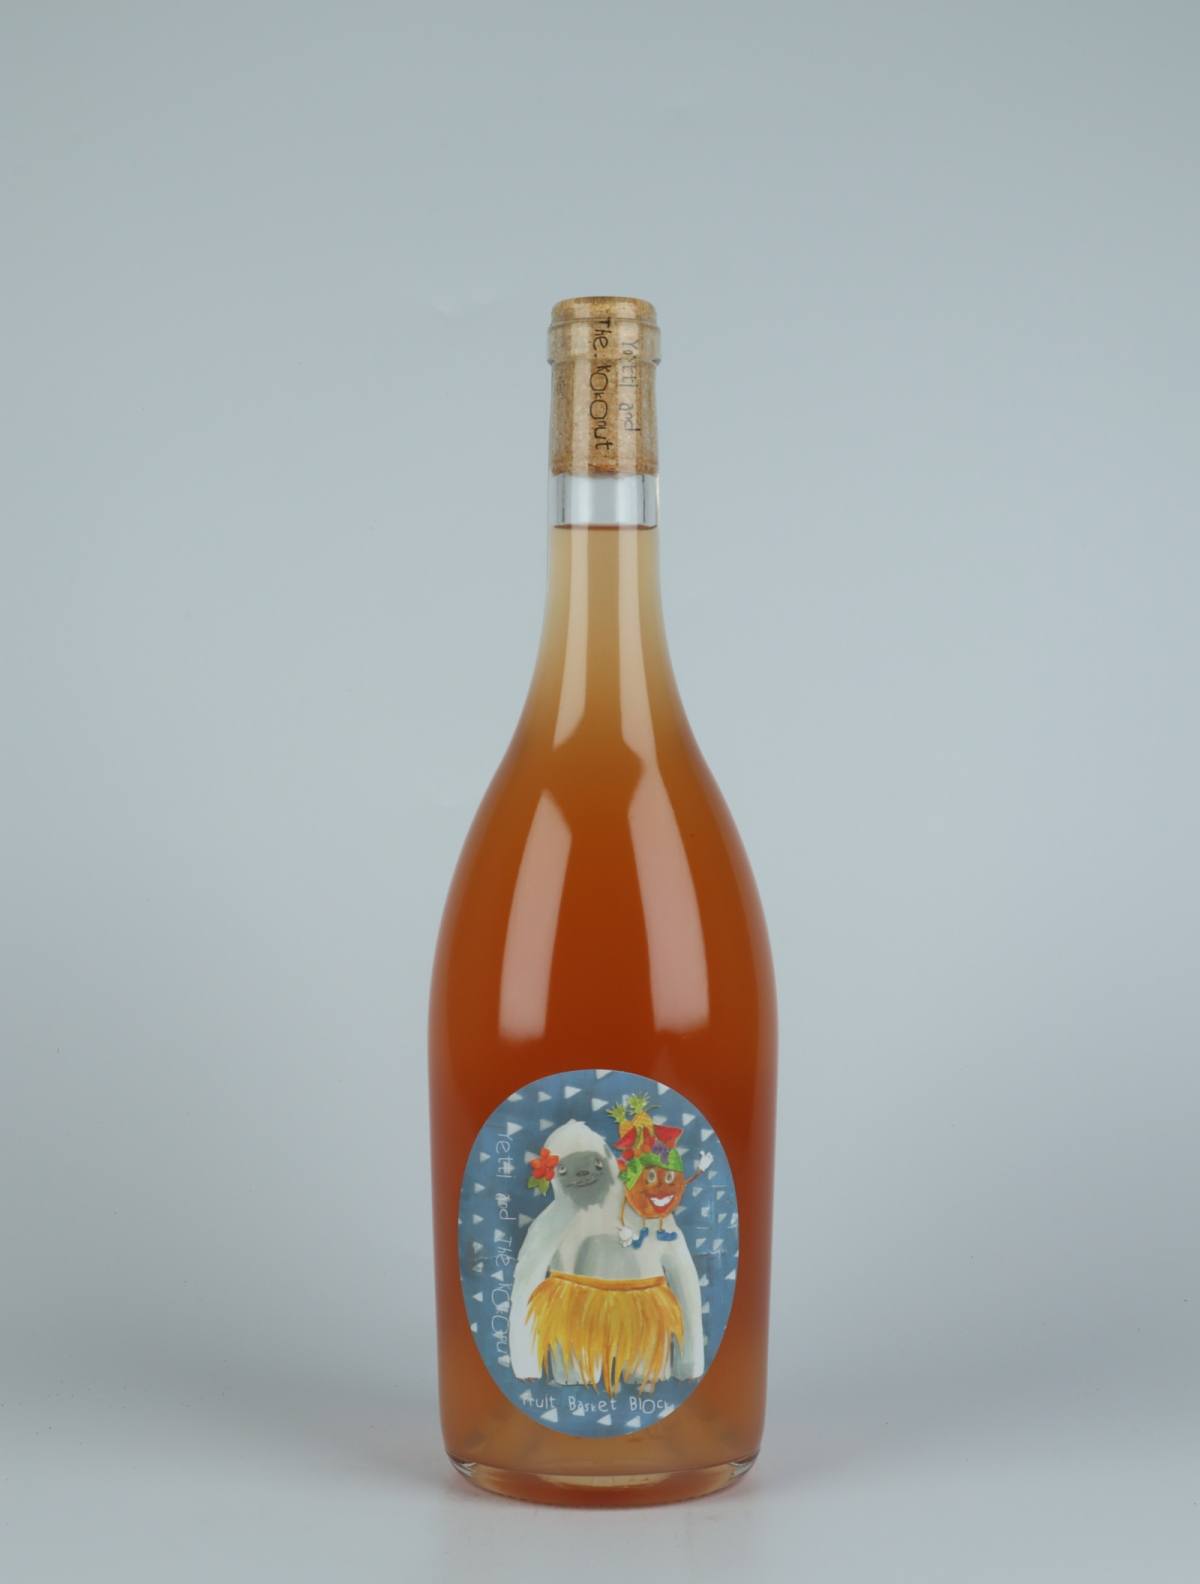 En flaske 2021 Fruit Basket 2.0 Orange vin fra Yetti and the Kokonut, Adelaide Hills i Australien